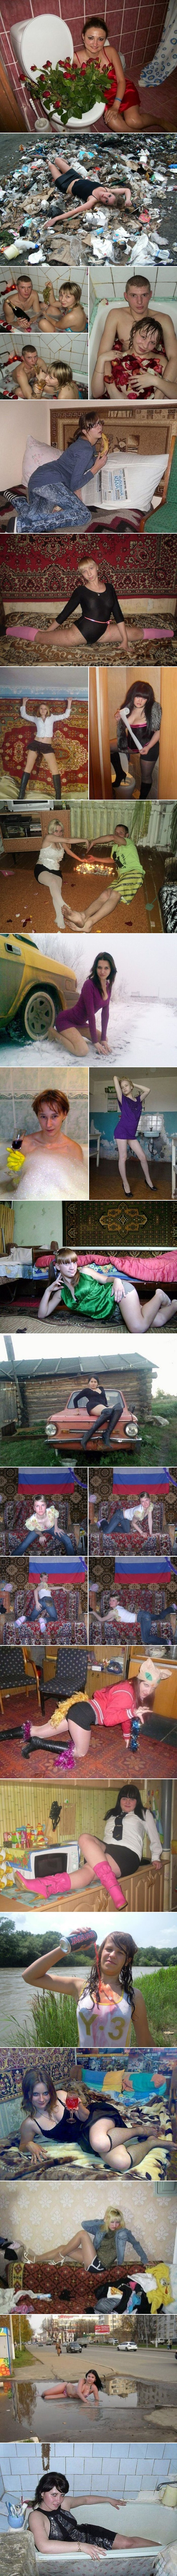 Uvjerene su da su im slike odlične? Ove slike ruskih djevojaka su pravi horor!